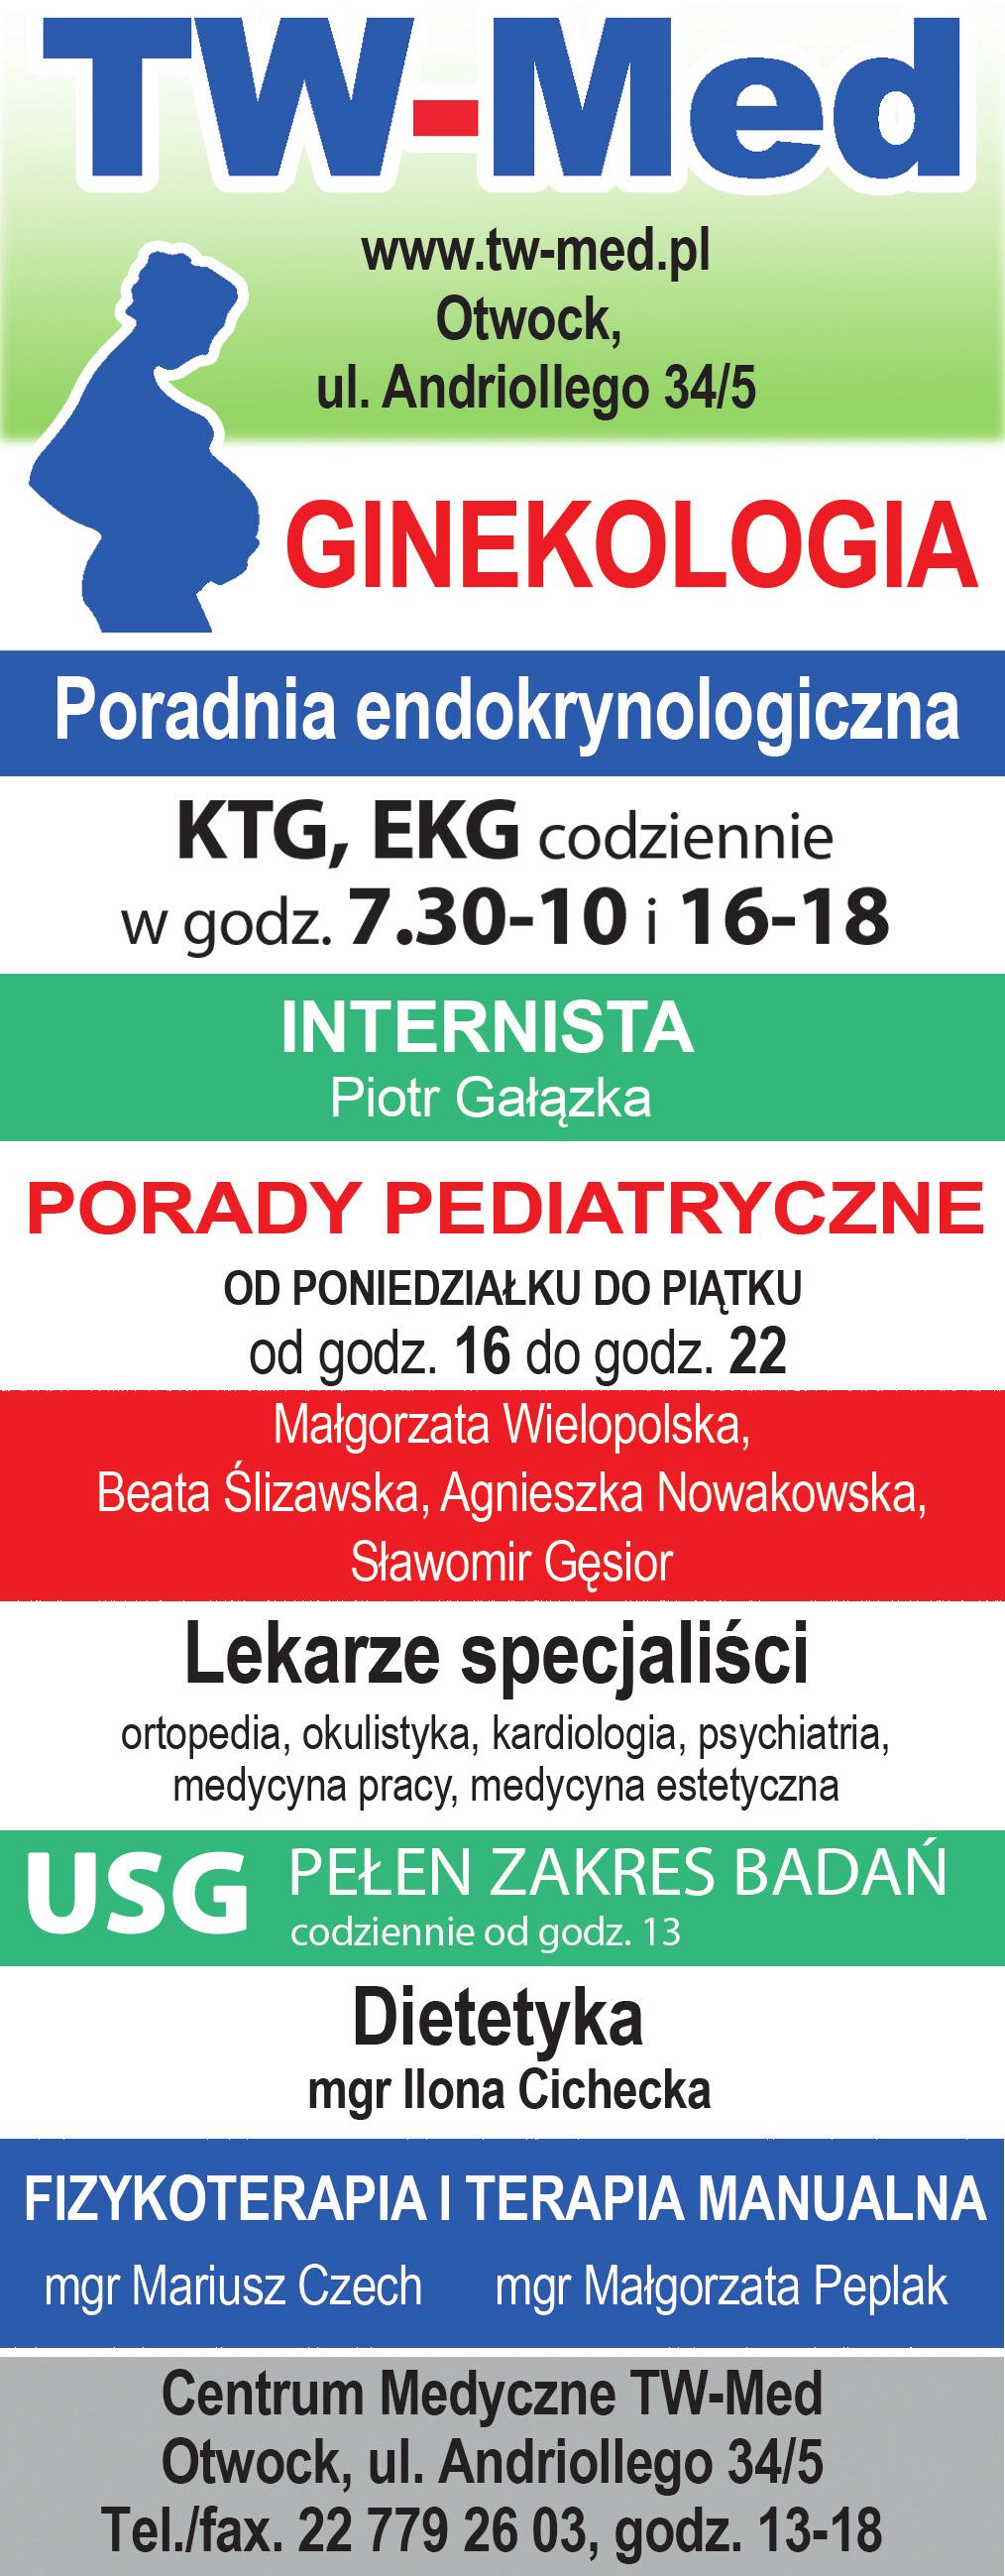 ogłoszenia drobne 33 linia otwocka 10-16 lipca 2017 GaBineT okulistyczny SPECJALISTYCZNE CENTRUM REHABILITACJI www.specer.pl lek. małgorzata gruchoła specjalista ii st. okulistyki lek.